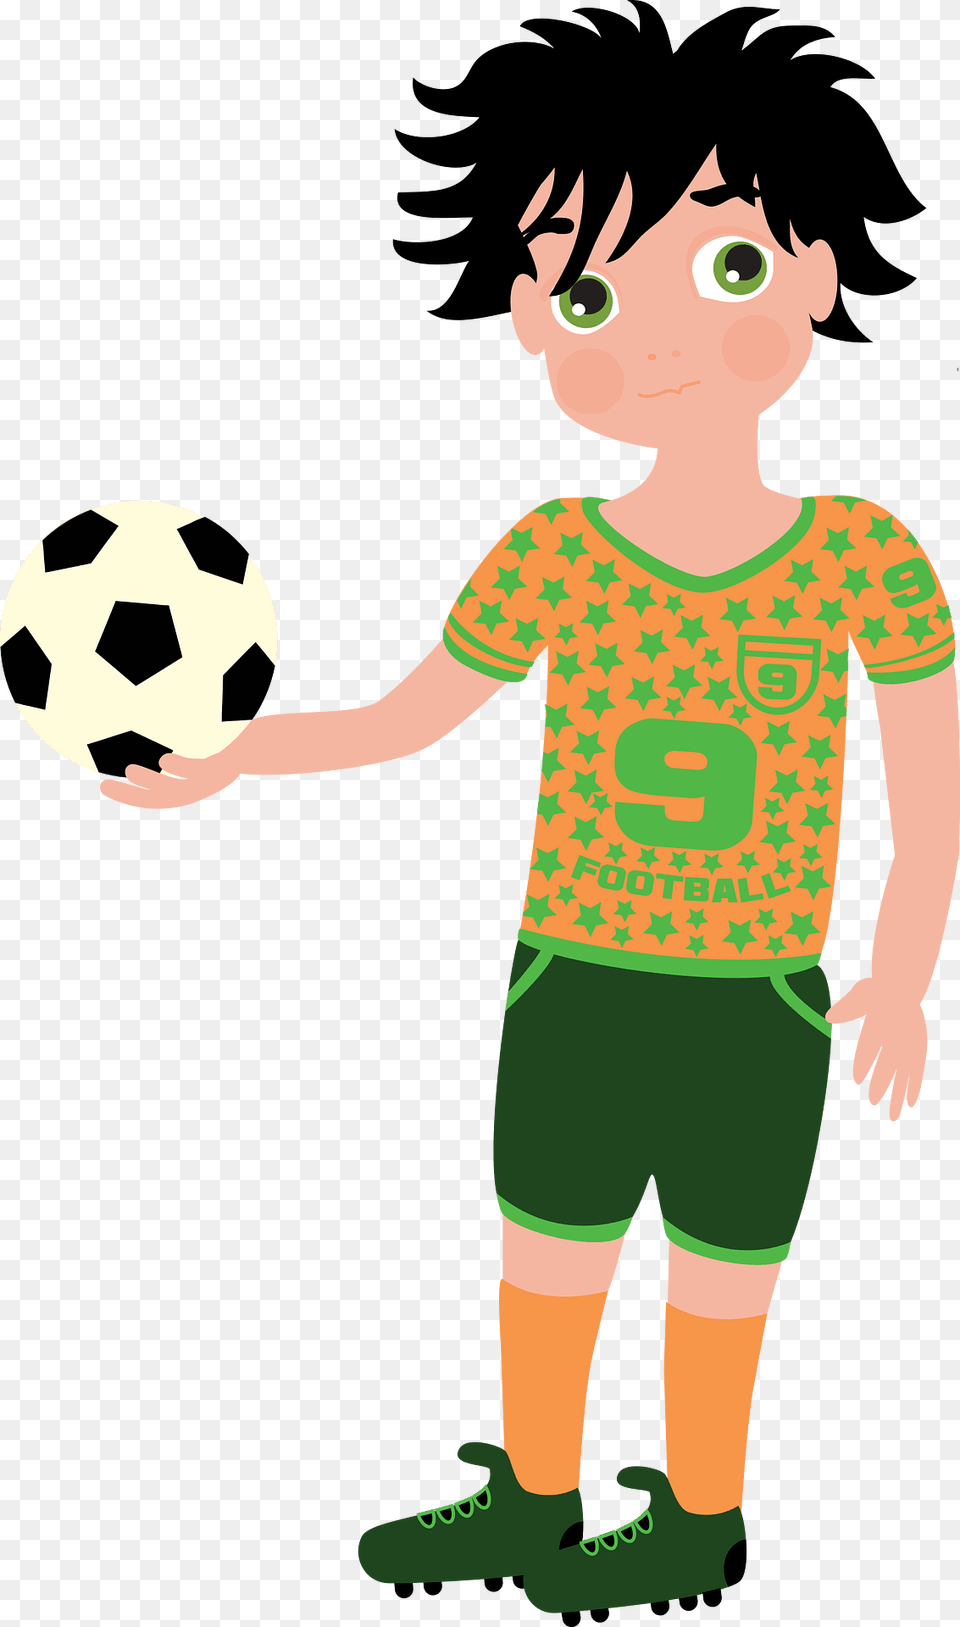 Footballer Clipart, Ball, Sport, Soccer Ball, Football Free Transparent Png